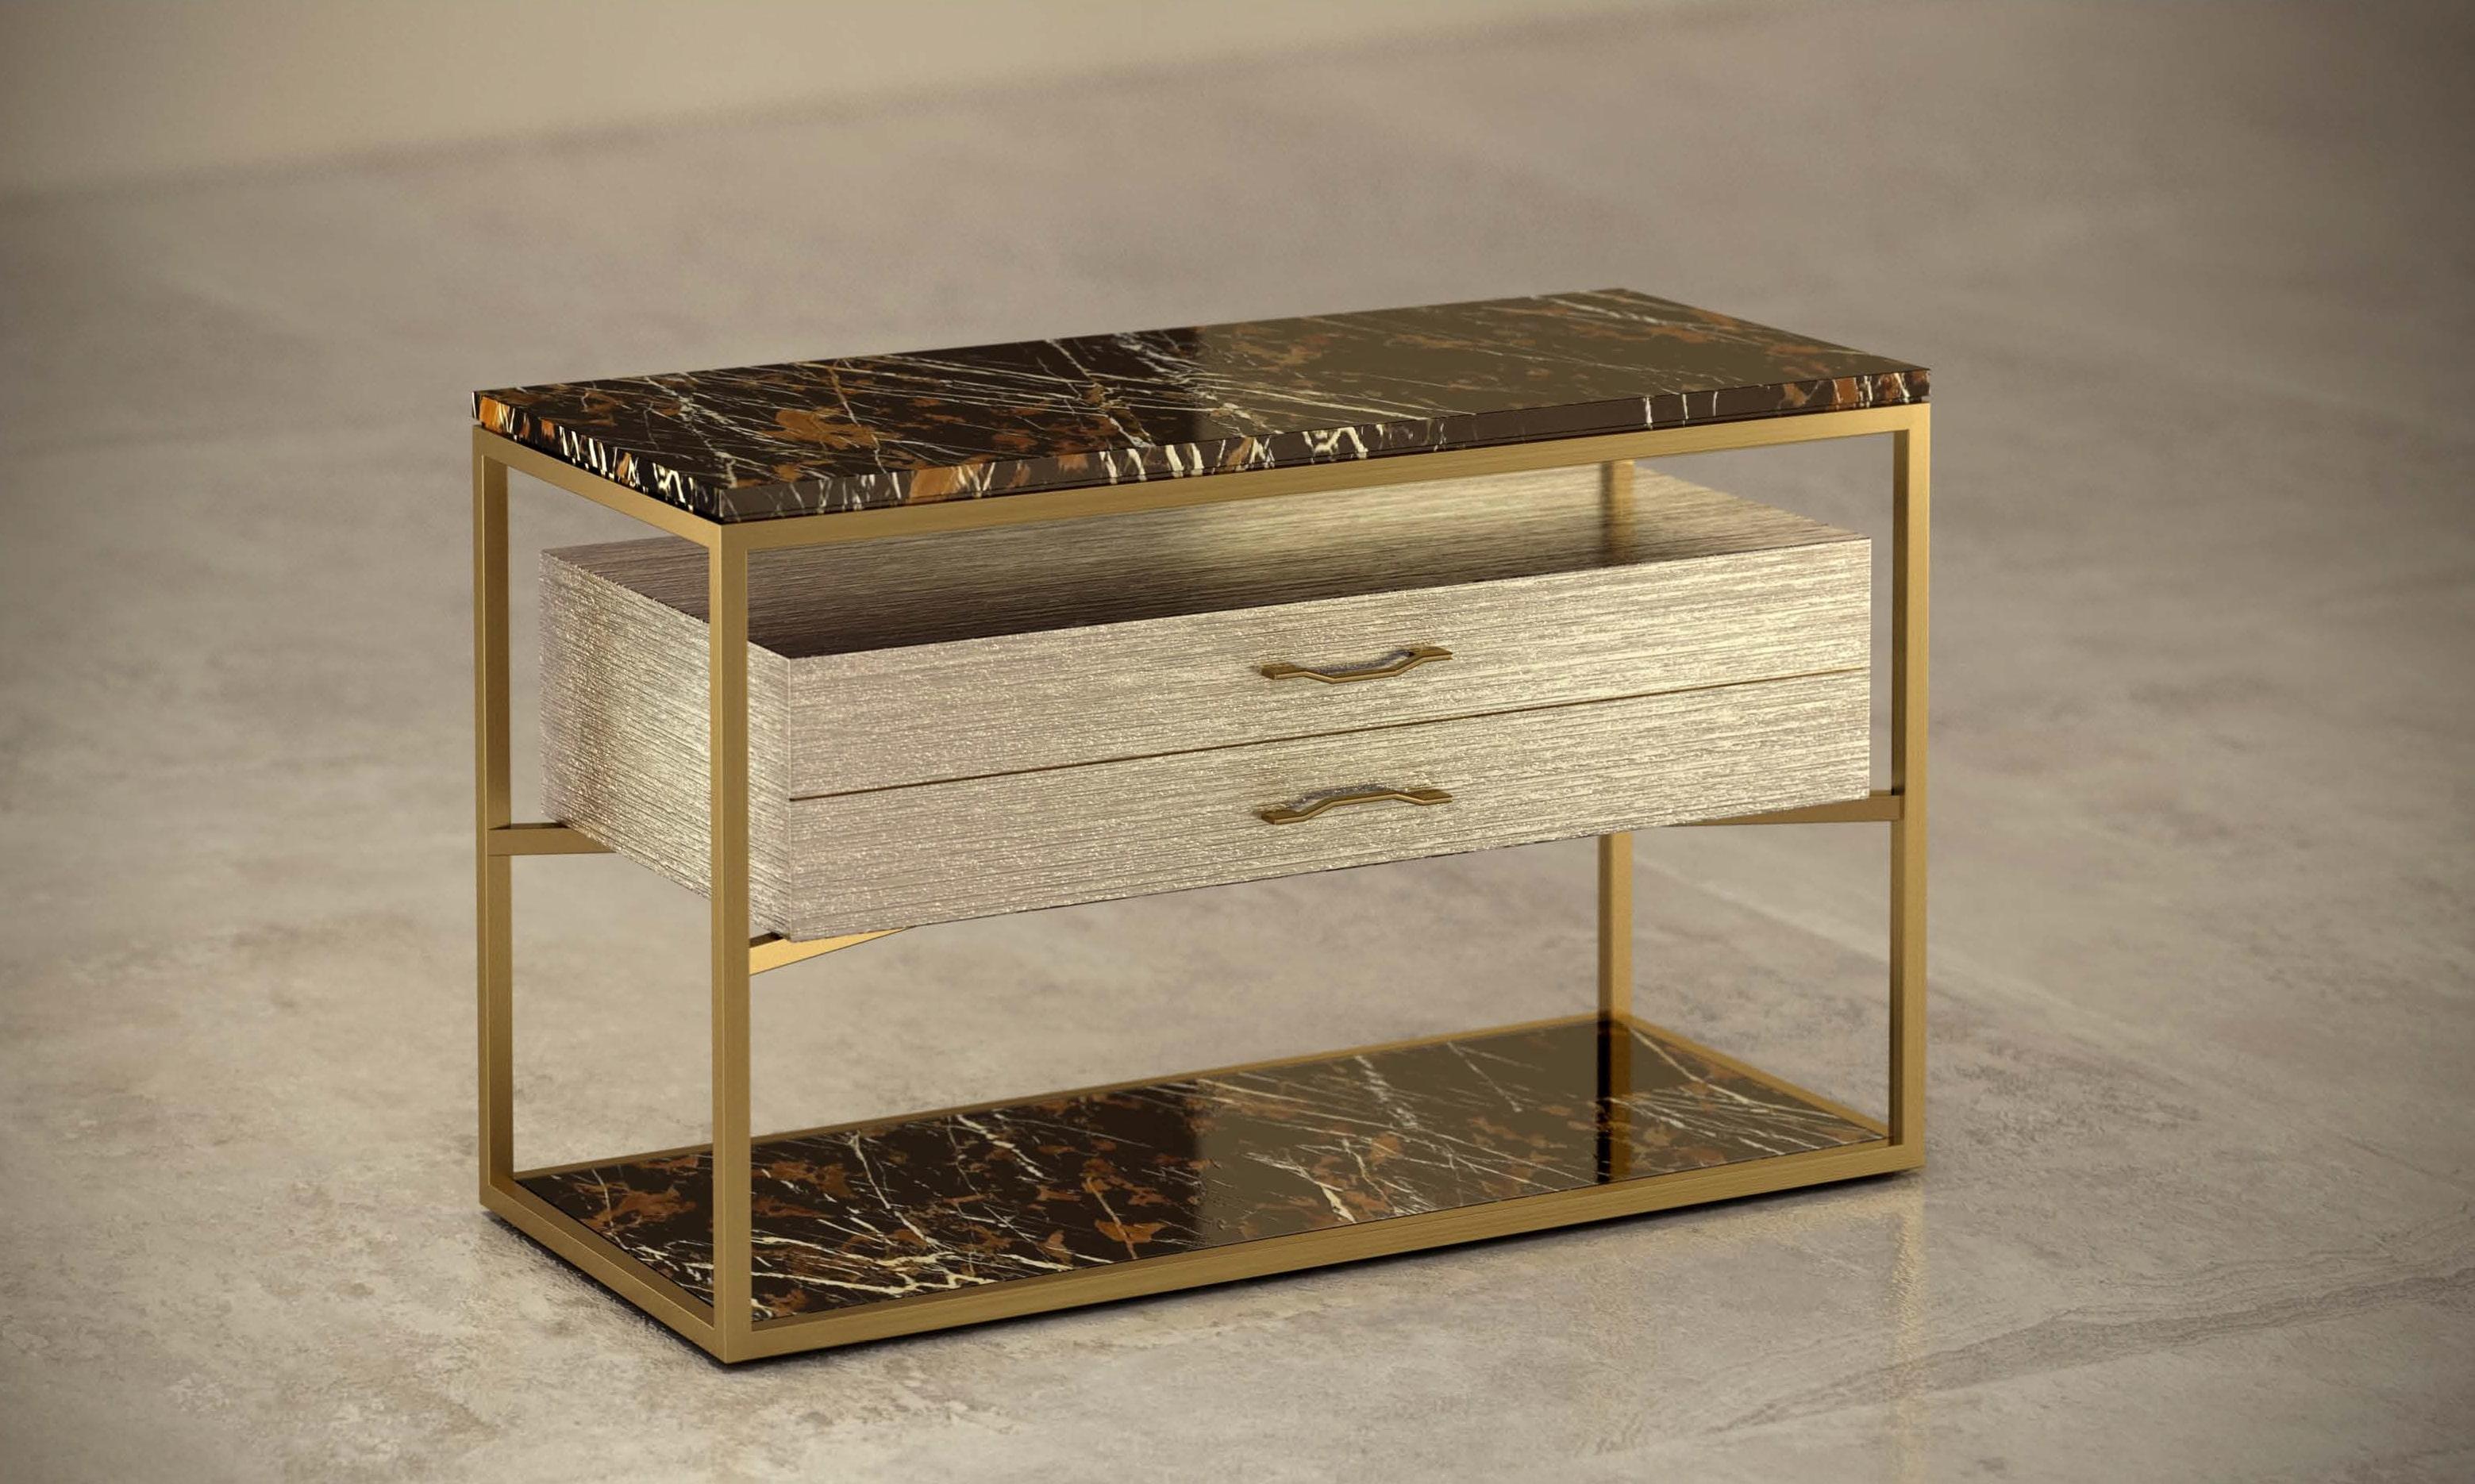 - Nachttisch aus Marmor, Holz und Metall, entworfen von Michele Arcarese Architect in Zusammenarbeit mit Giovannozzi.
- Platte mit Rille, aus Marmor Typ 